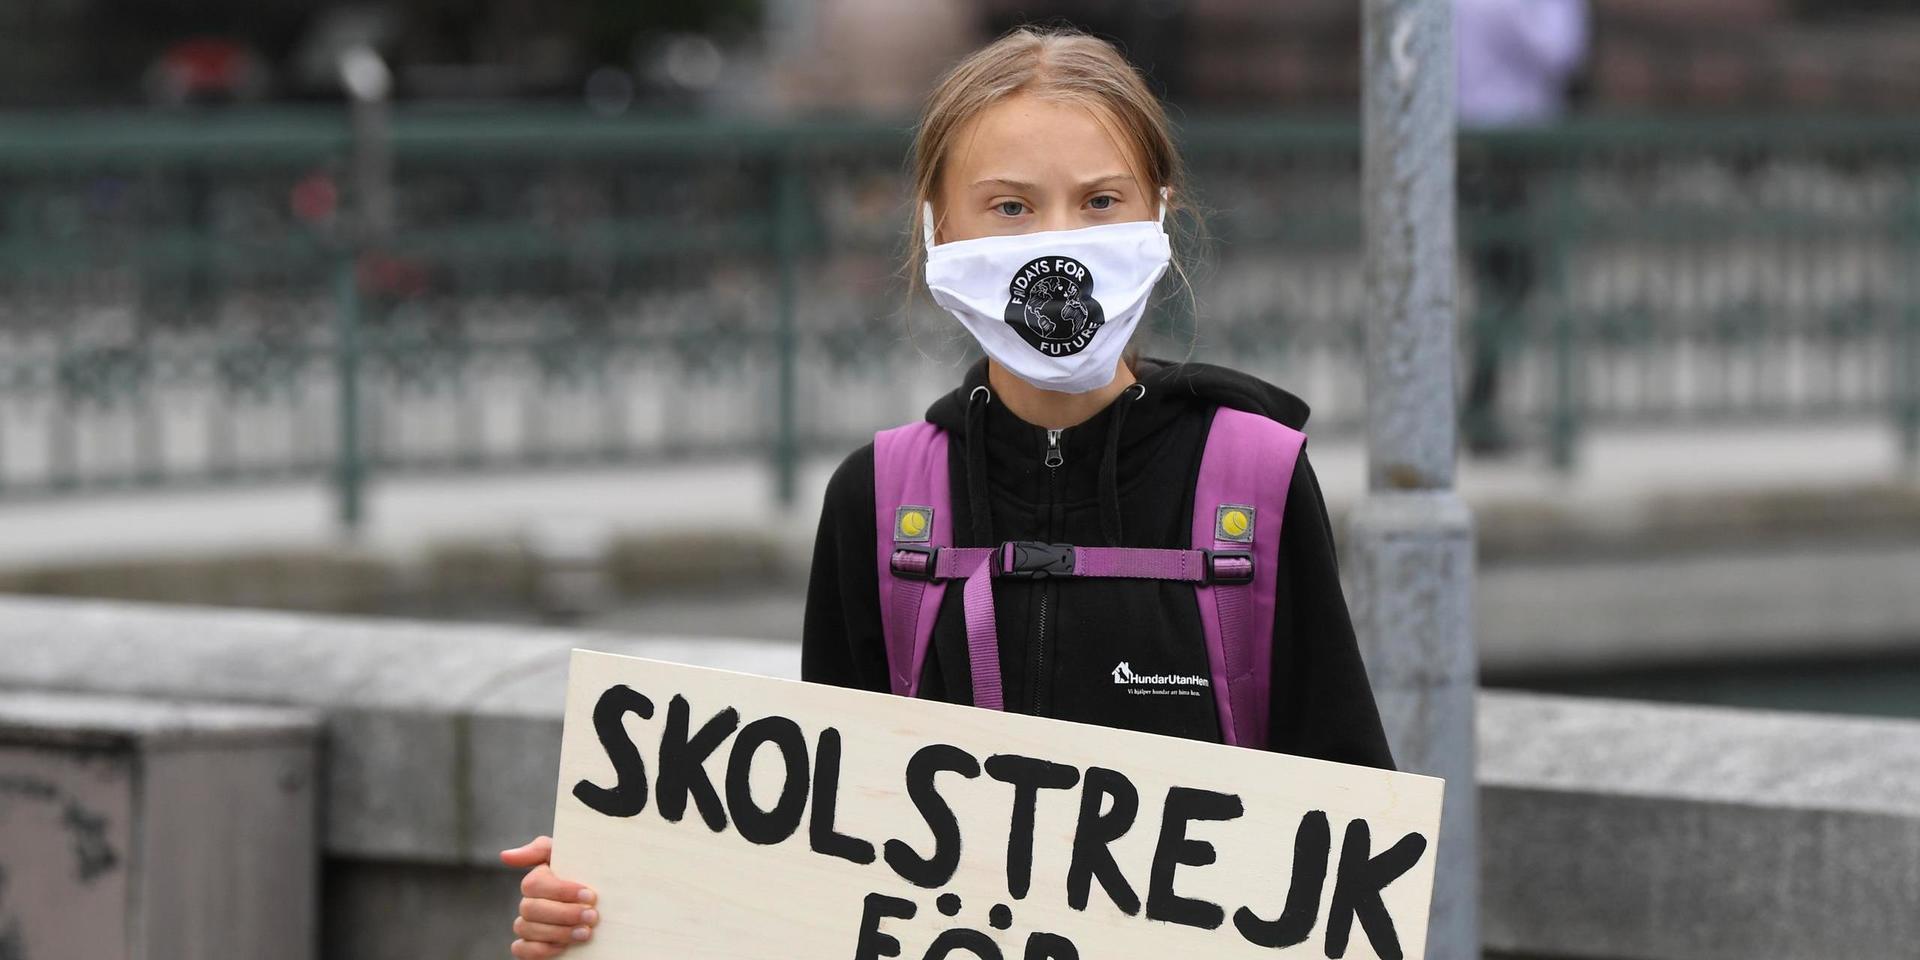 Klimataktivisten Greta Thunberg strejkar utanför Riksdagshuset i Stockholm. Under onsdagen besökte hon DN:s redaktion.